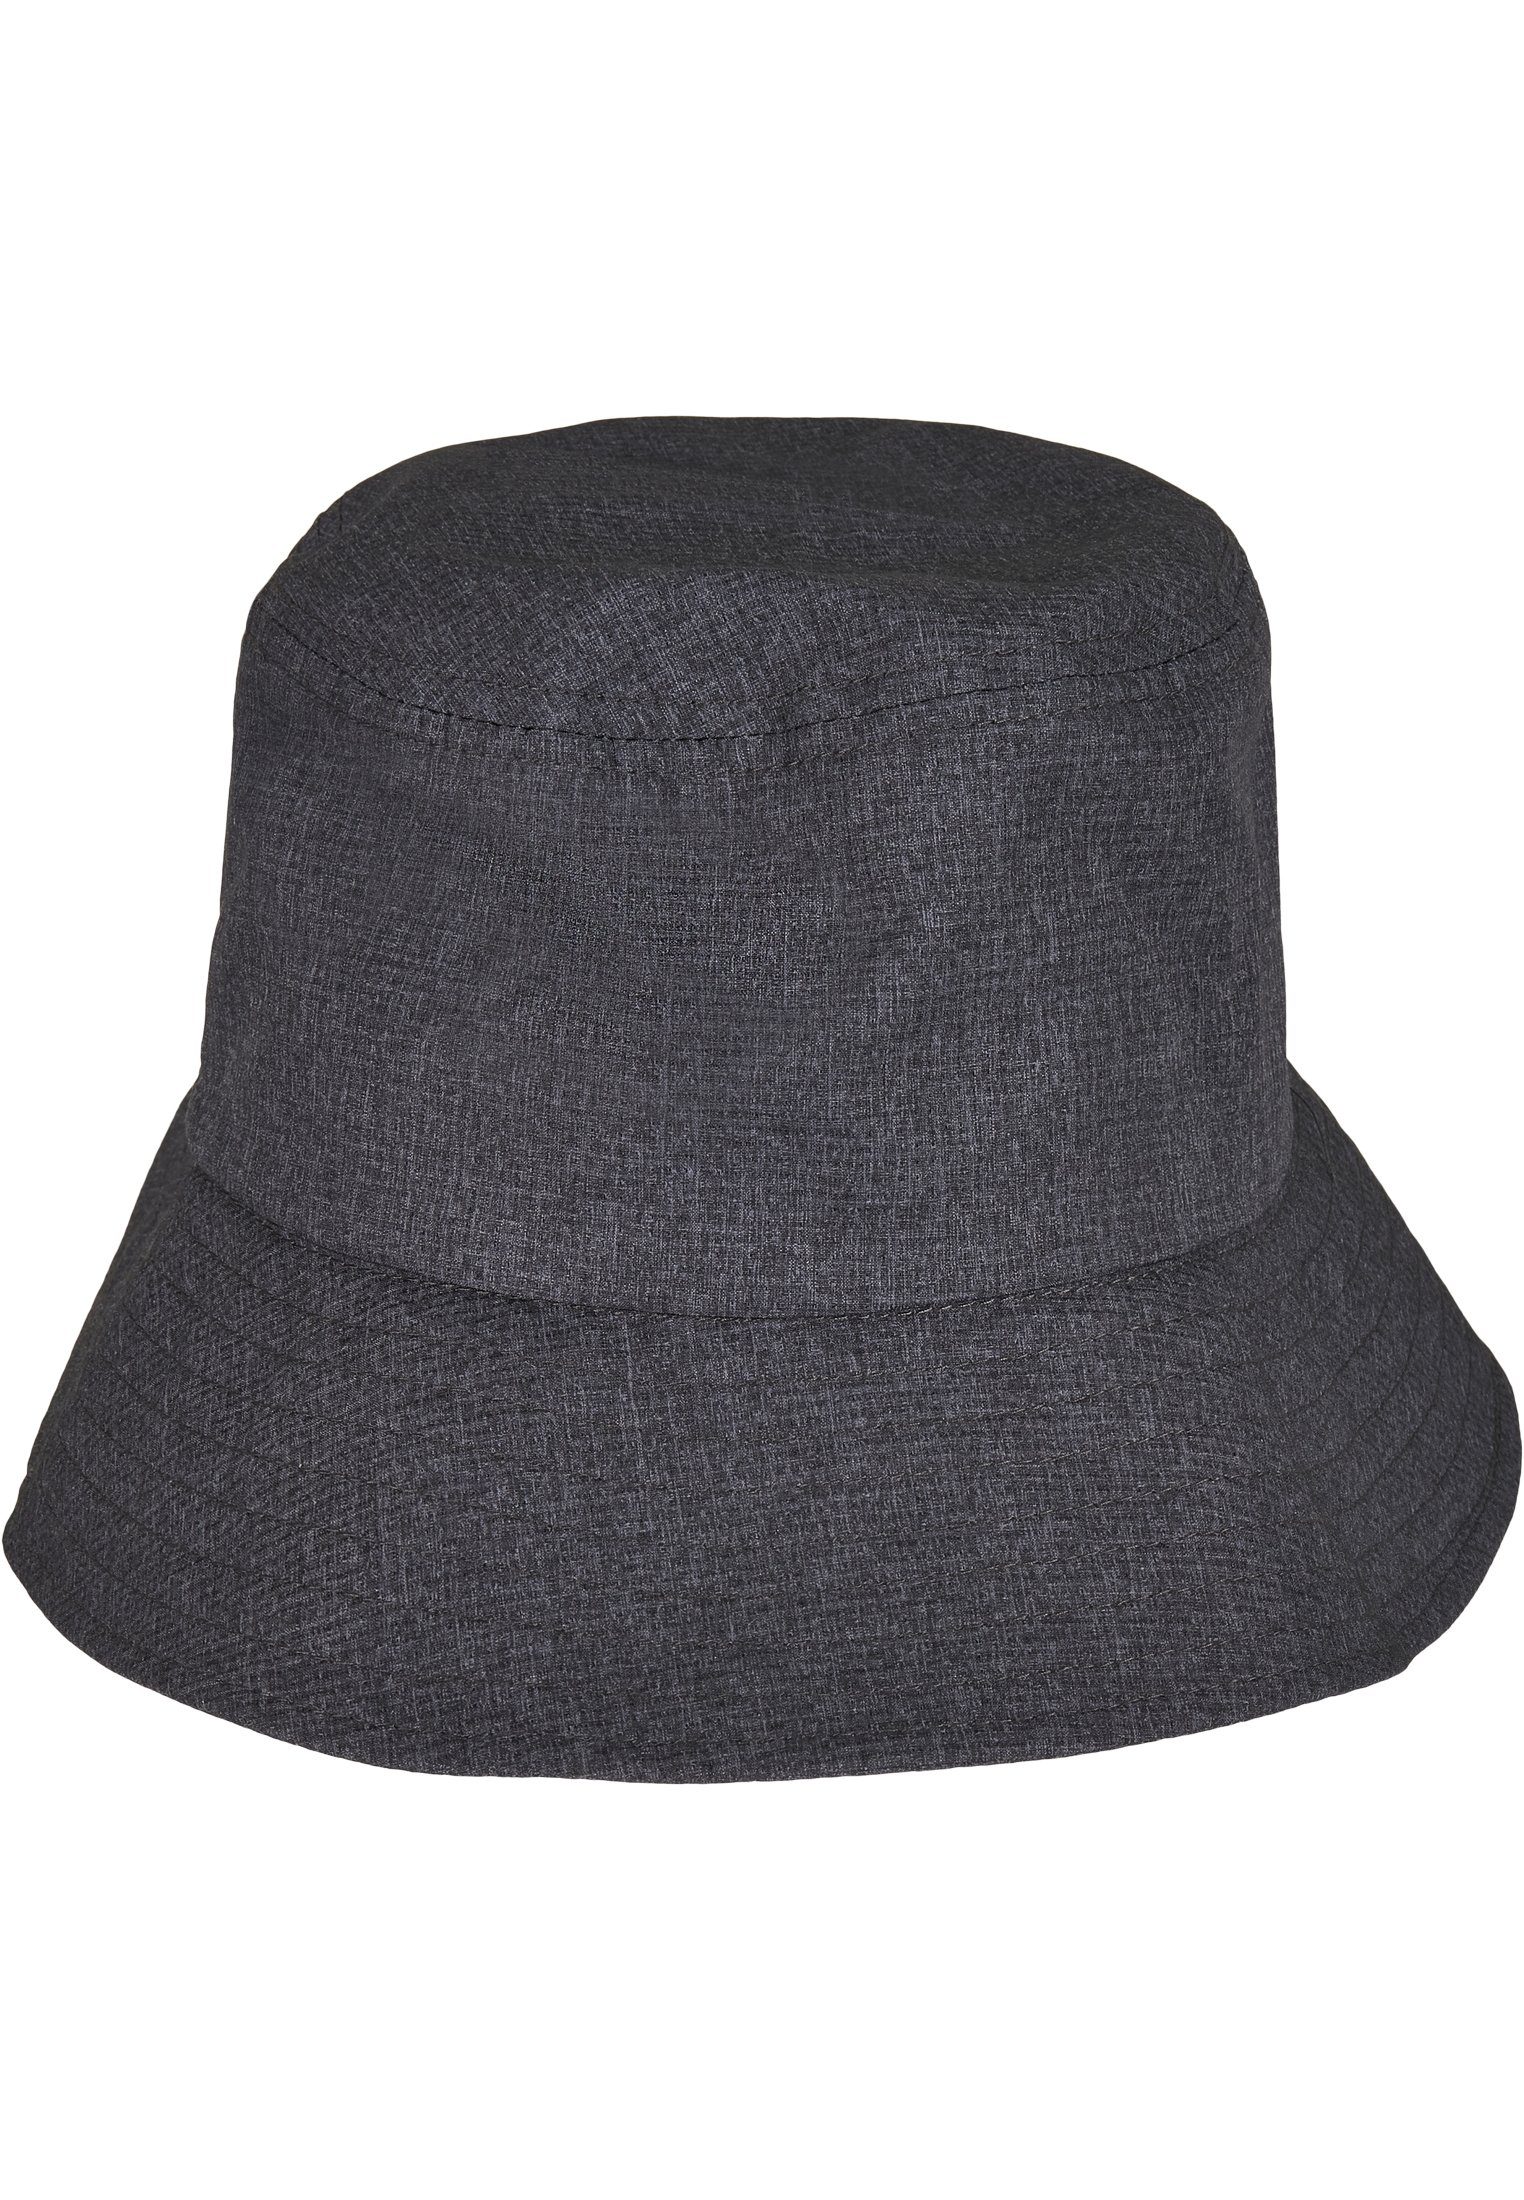 Flexfit Flexfit Hat Hat Flex Bucket Bucket Cap heathergrey Adjustable